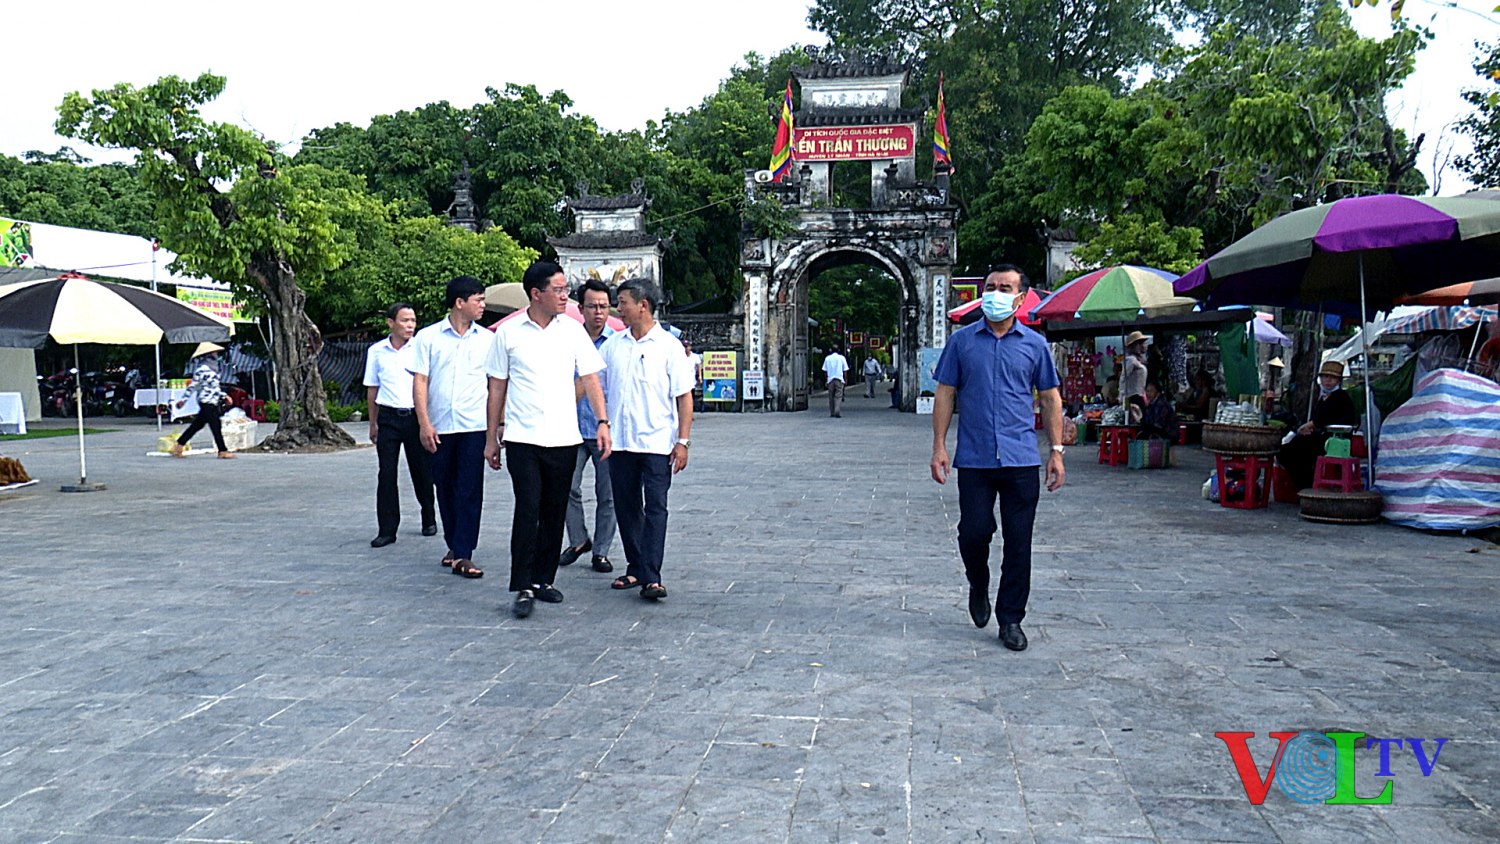 Lãnh đạo huyện Lý Nhân kiểm tra công tác chuẩn bị Lễ hội truyền thống Đền Trần Thương năm 2022.